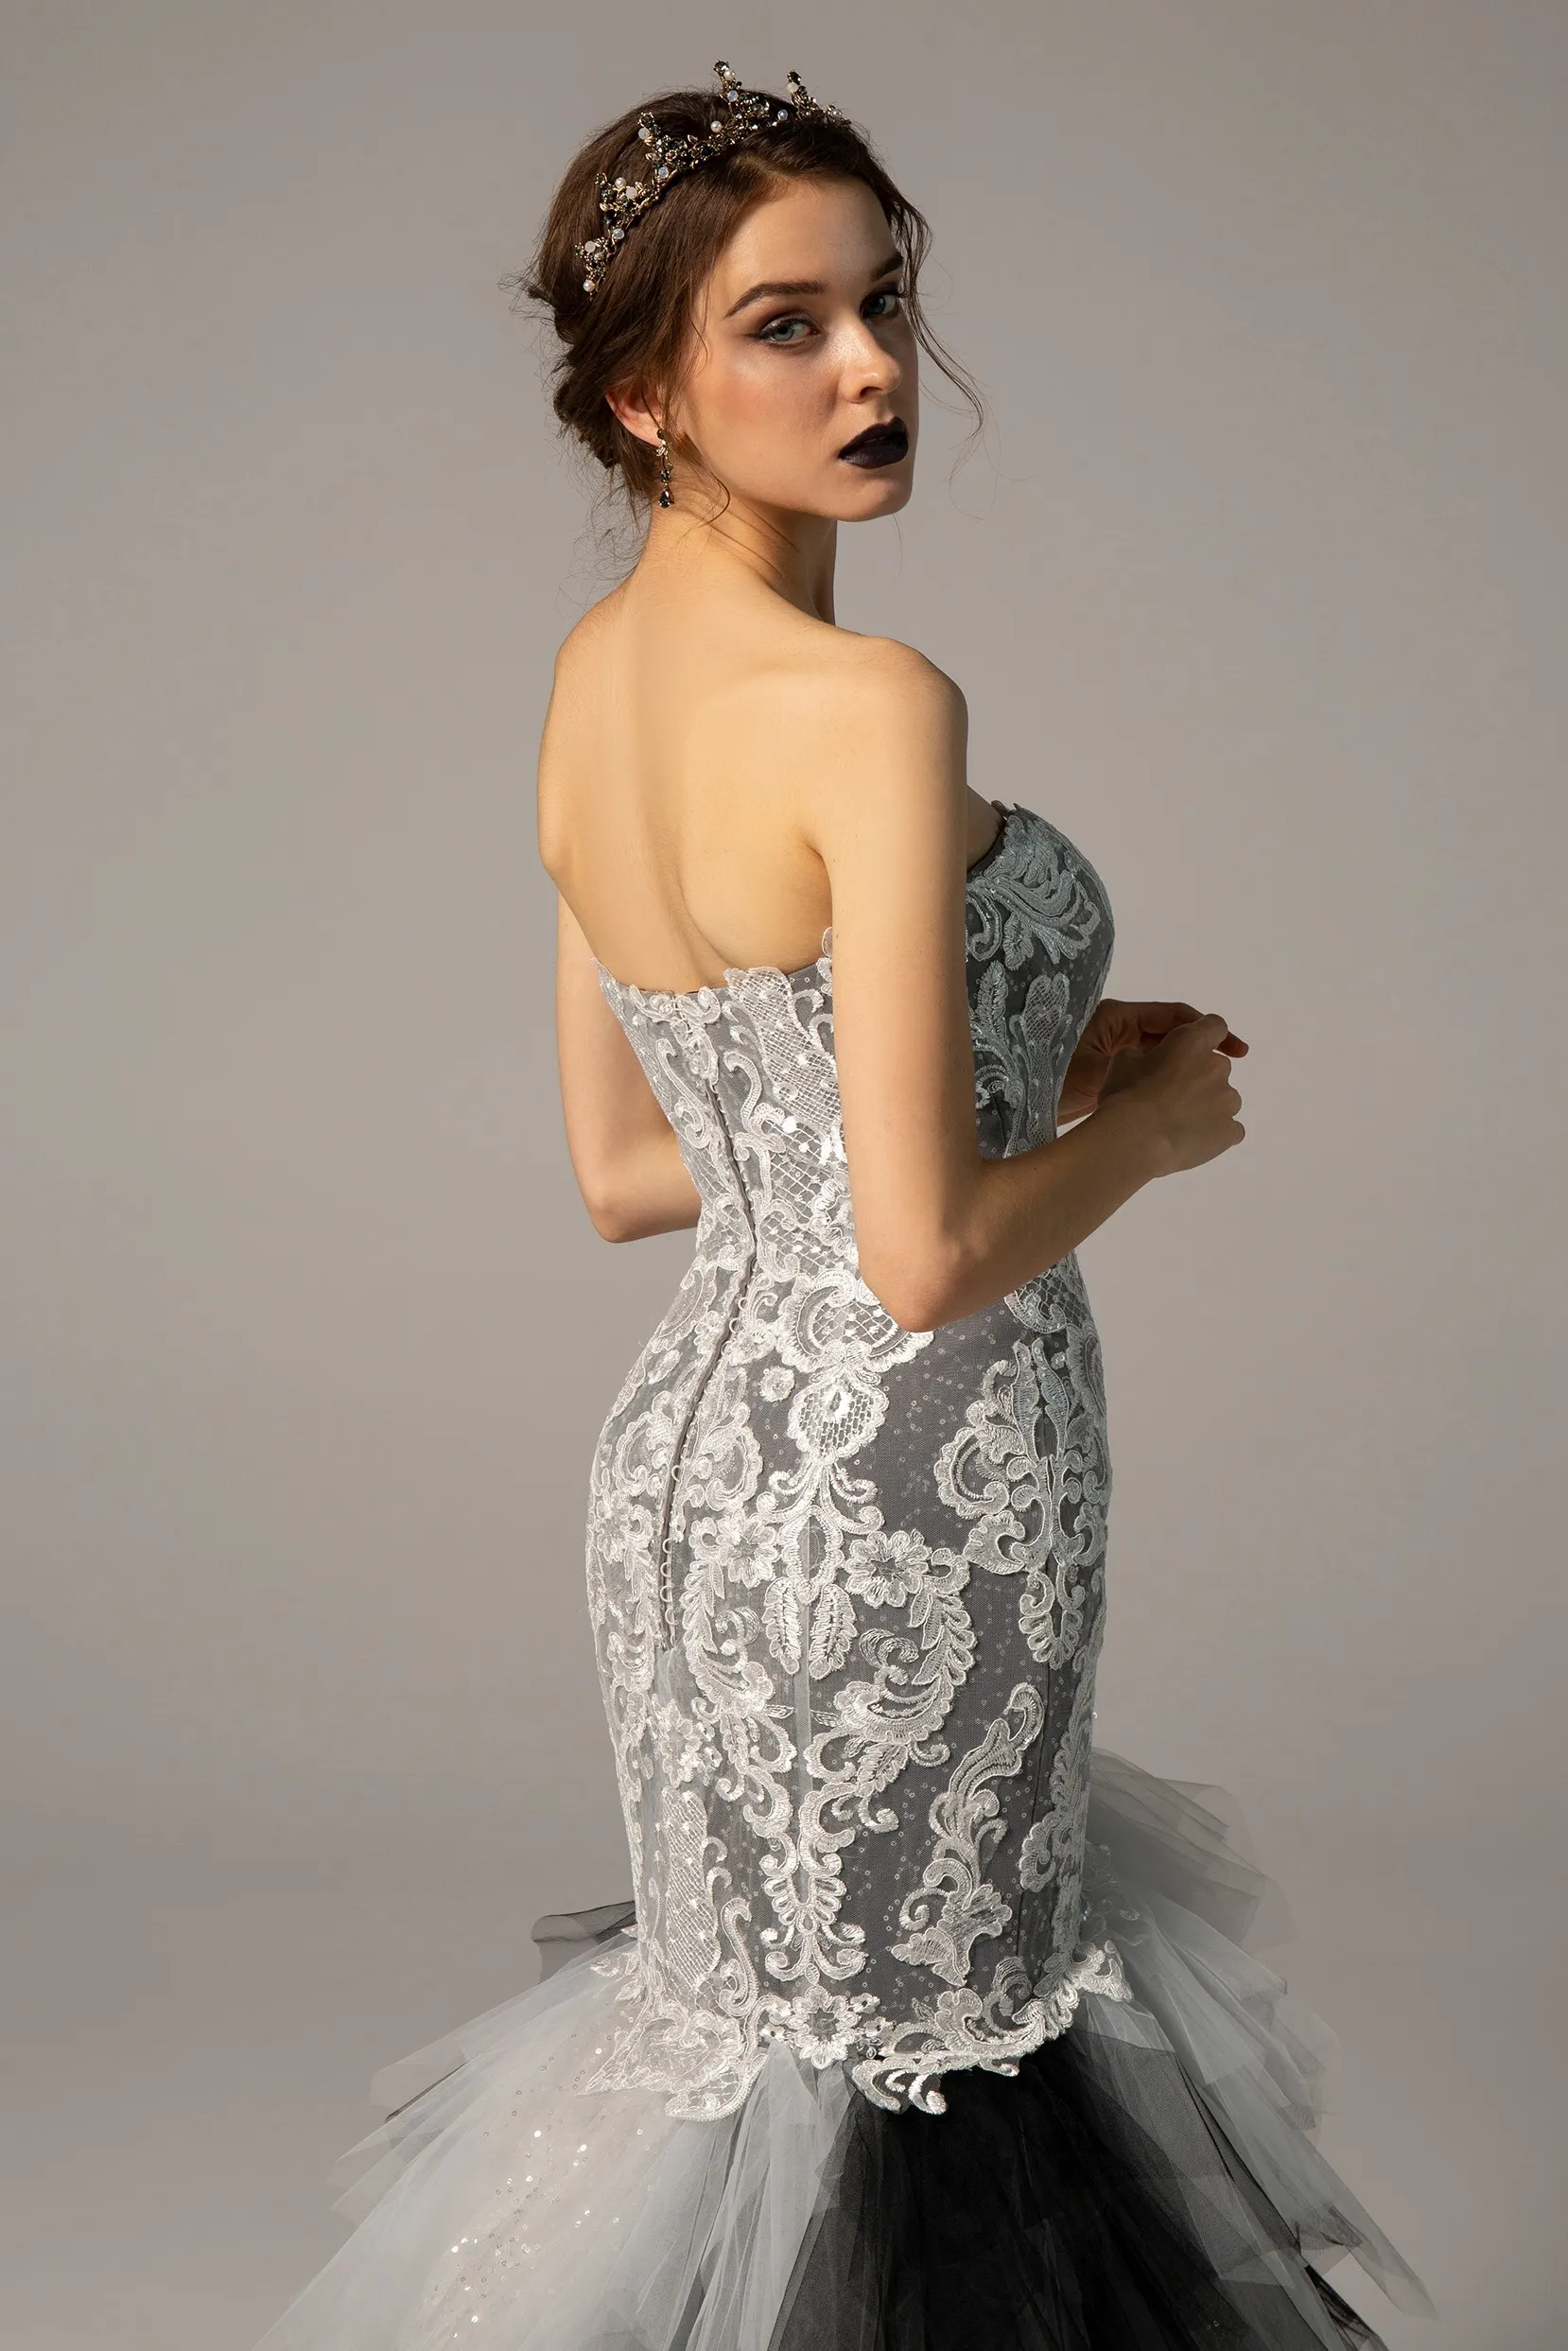 Robes de mariée sirène ivoire noir et blanc robes gothiques chérie volants jupe robe de mariée formelle avec couleur sur mesure Made212p